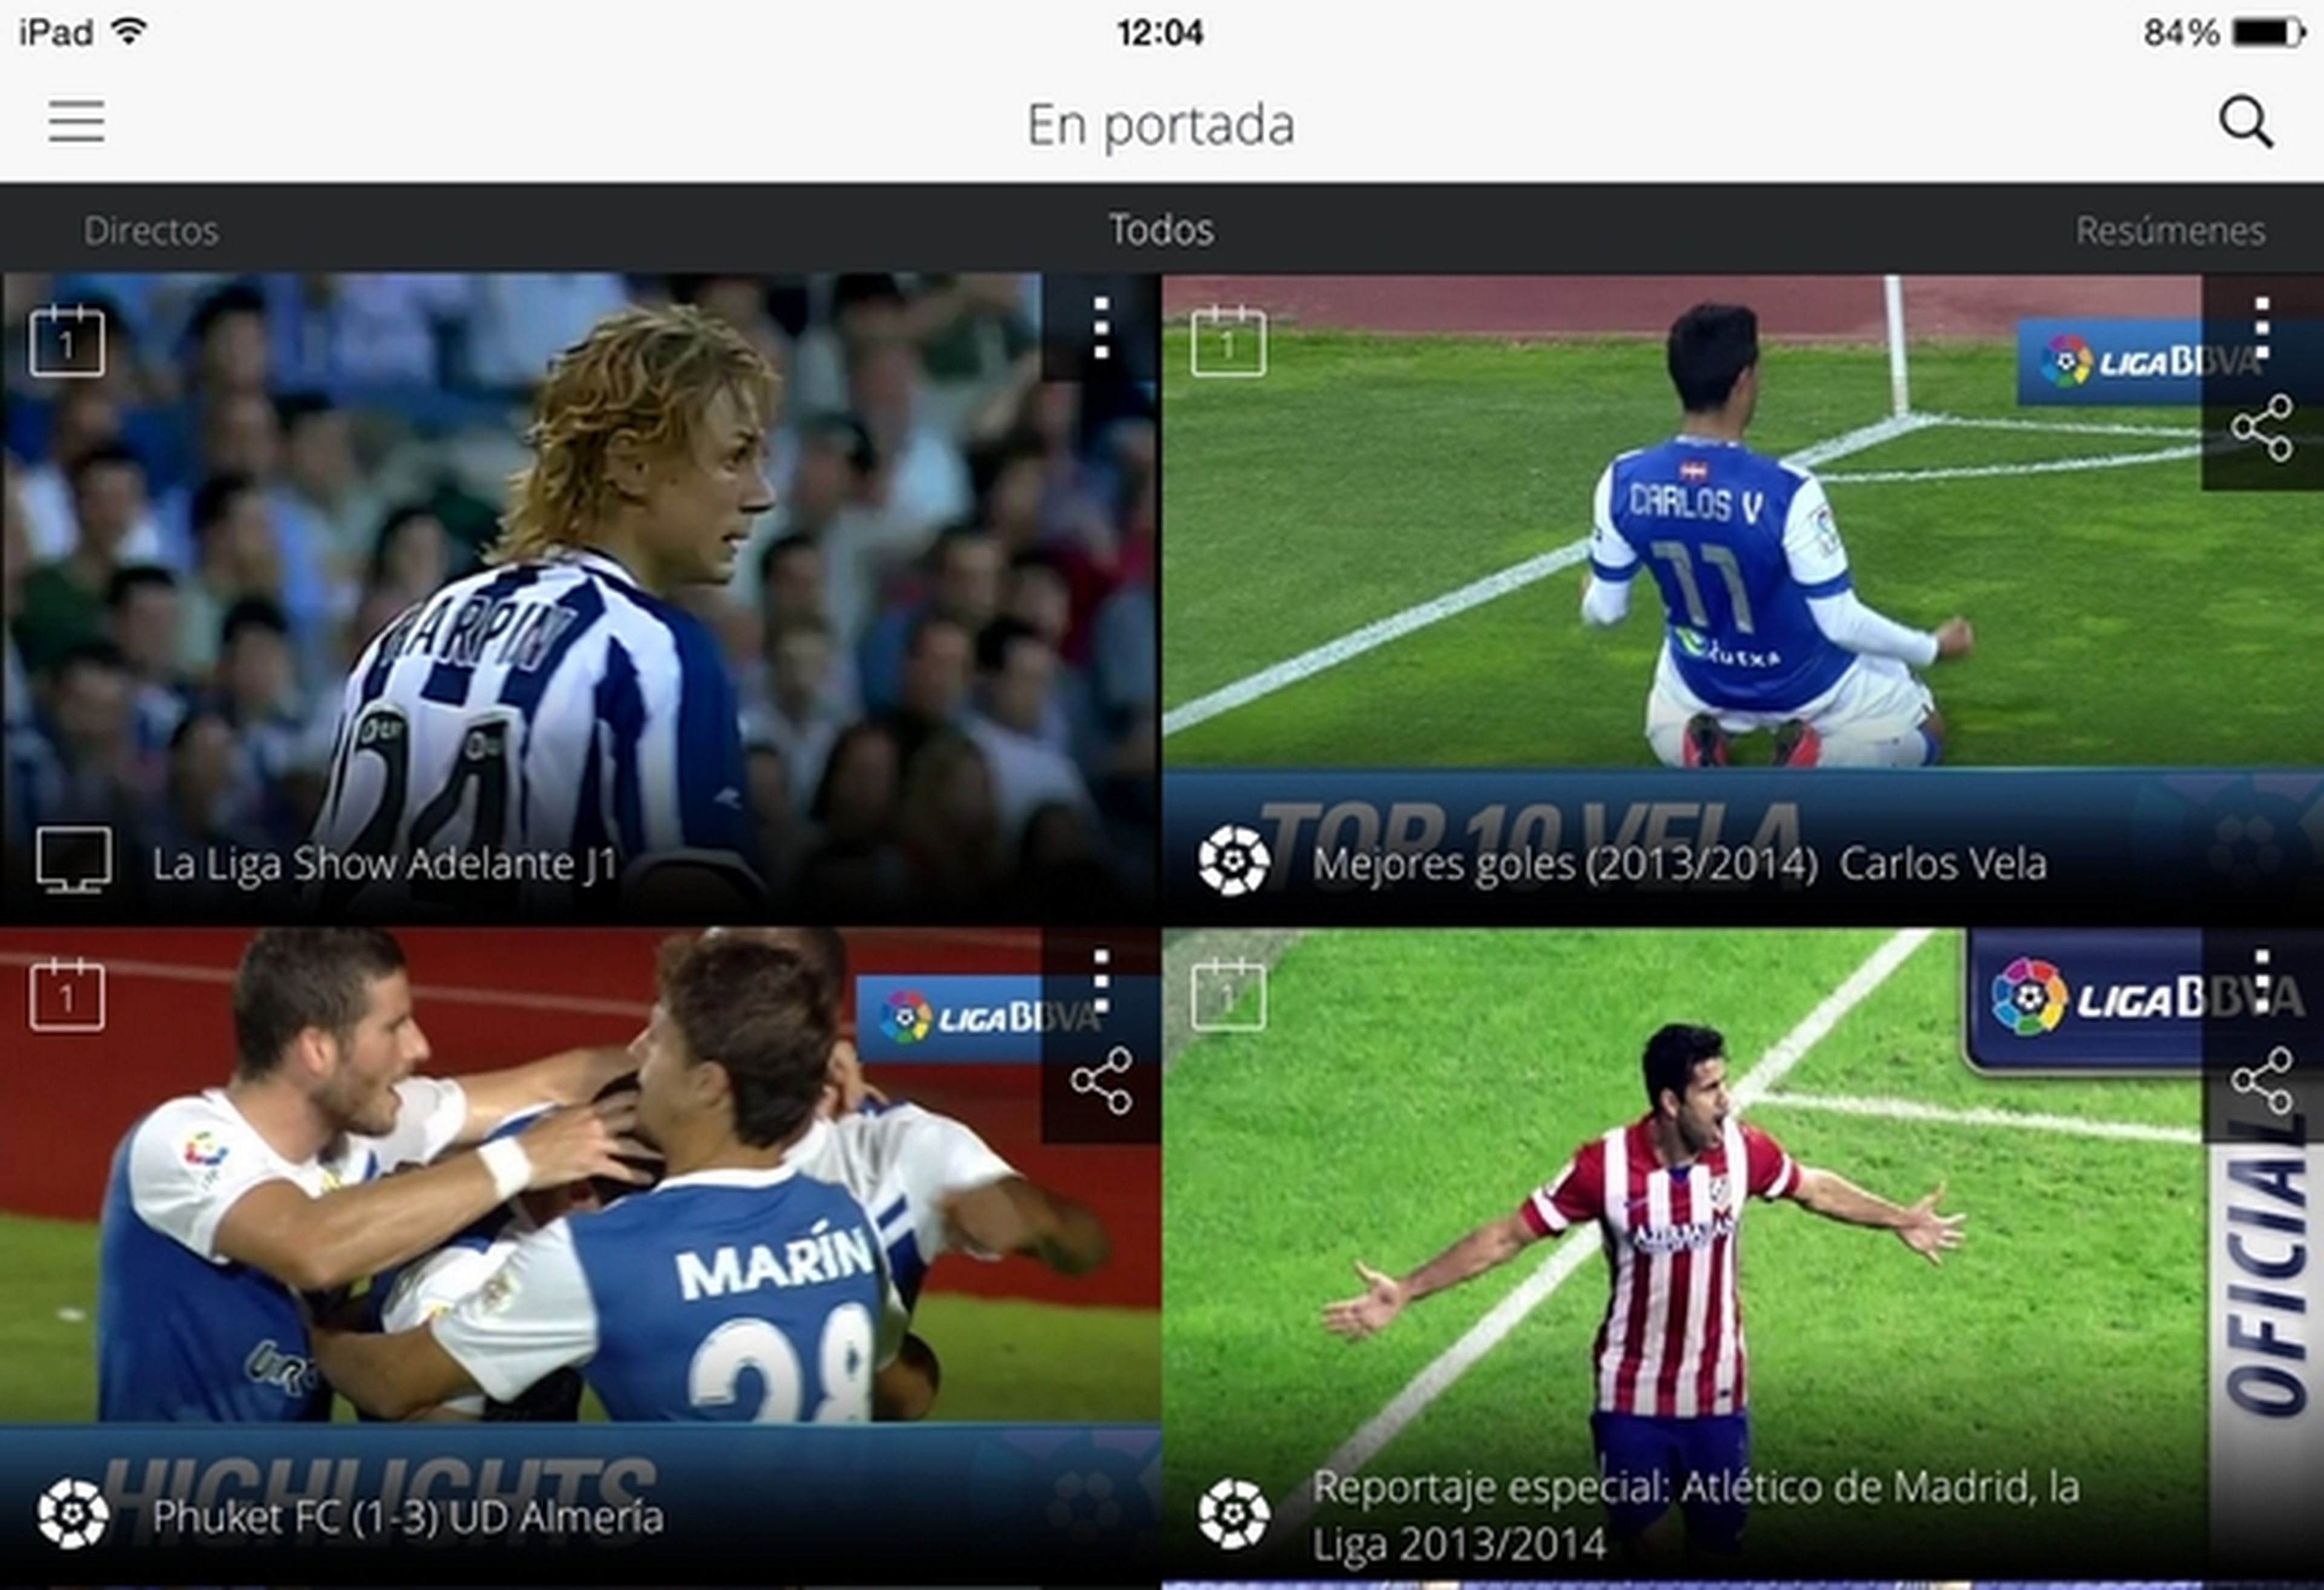 Llega La Liga TV, la app oficial para ver la liga de fútbol con resúmenes de los partidos, todos los goles, reportajes, y partidos de la liga Adelante en directo. Compatible con Chromecast